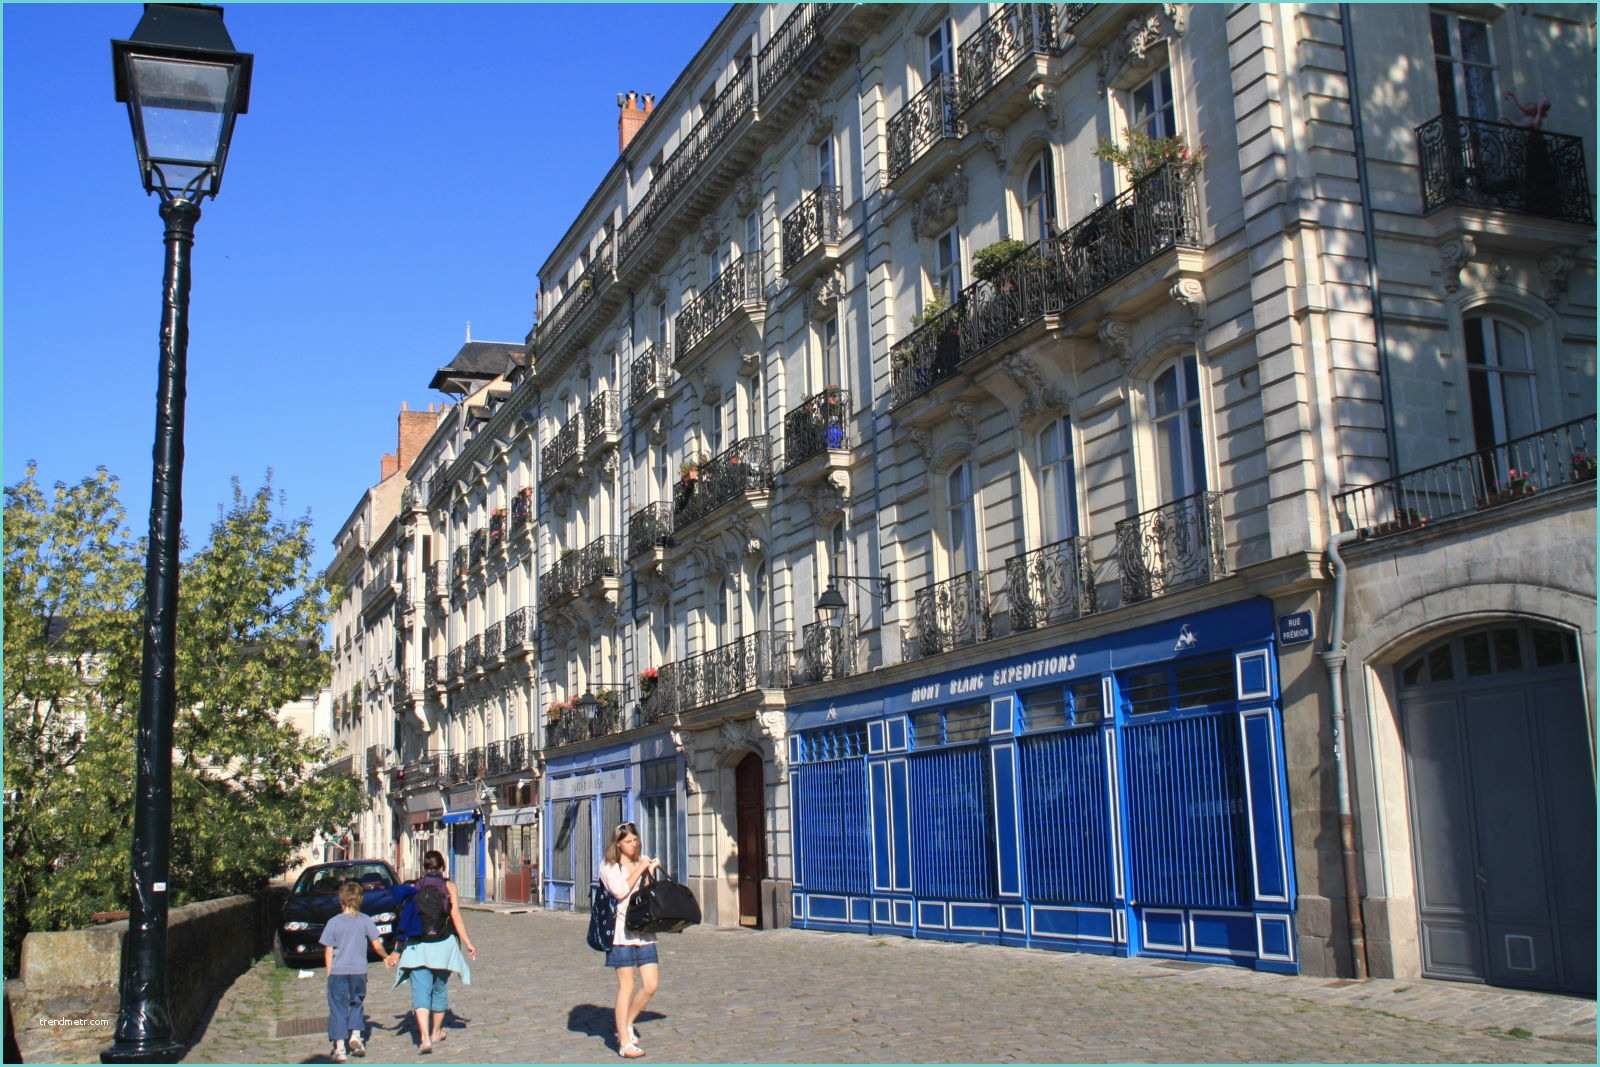 Location Appartement Nantes Centre Ville Particulier Quelques Liens Utiles